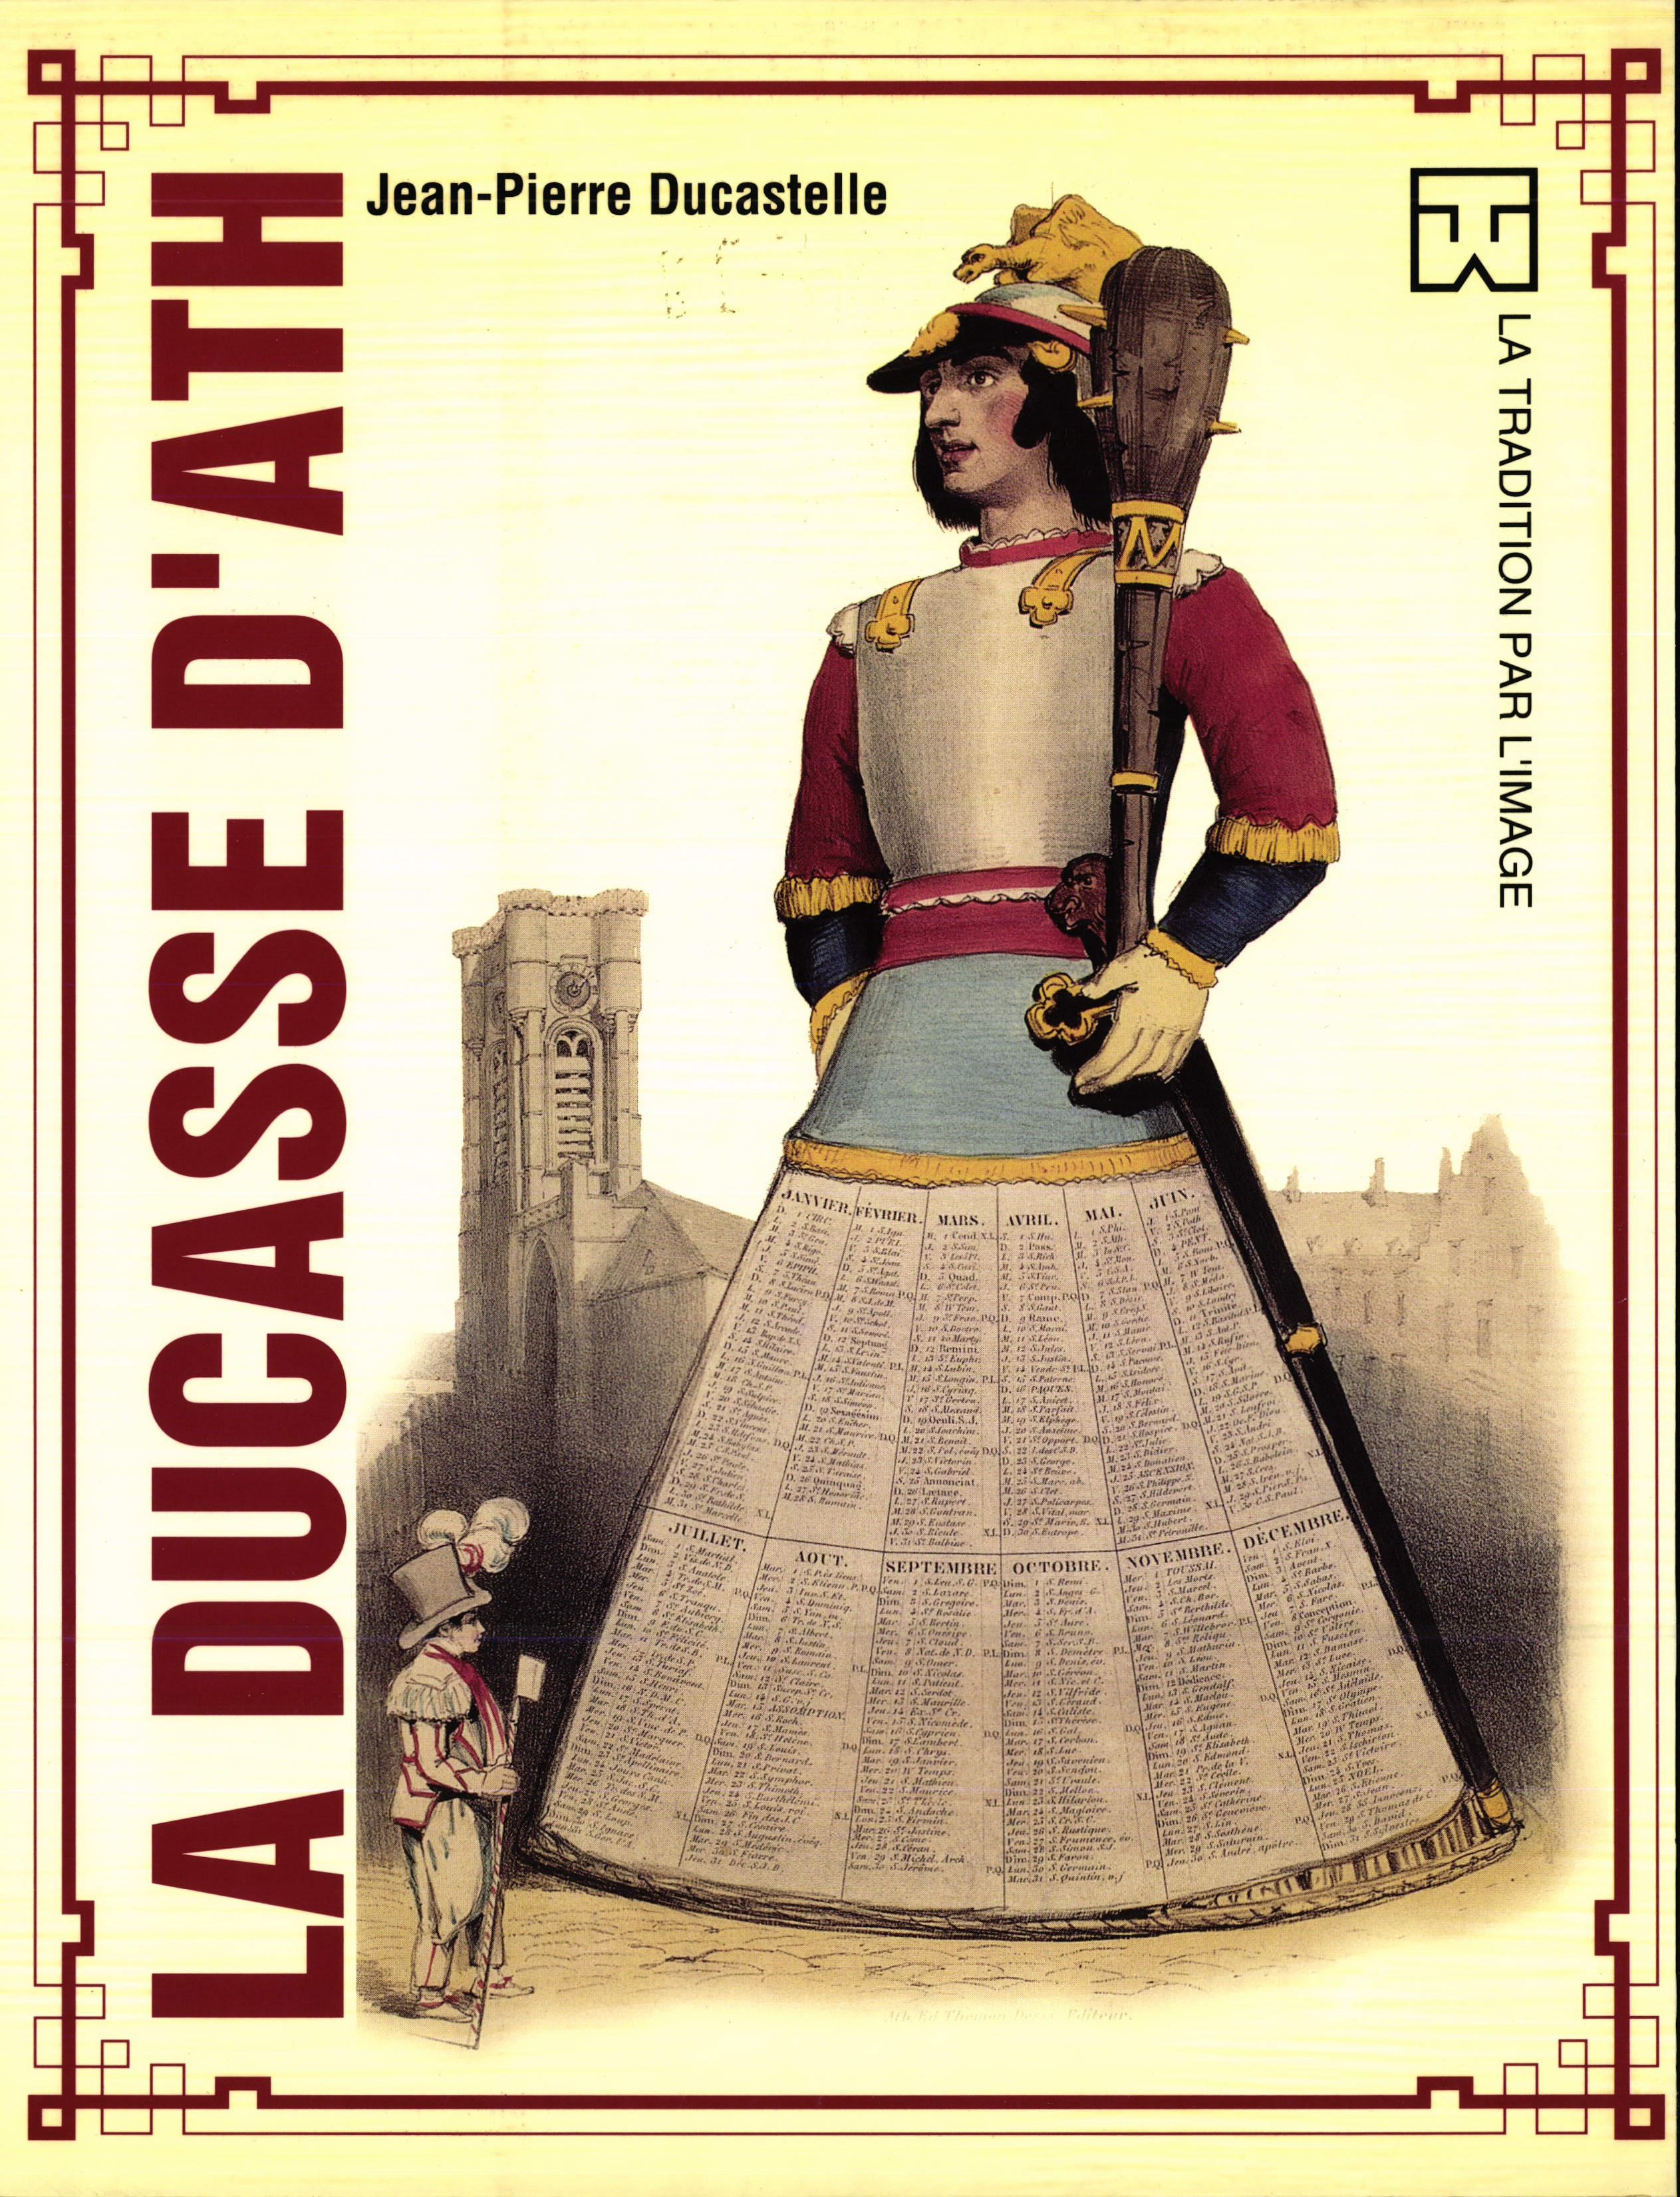 Publication La Ducasse d’Ath